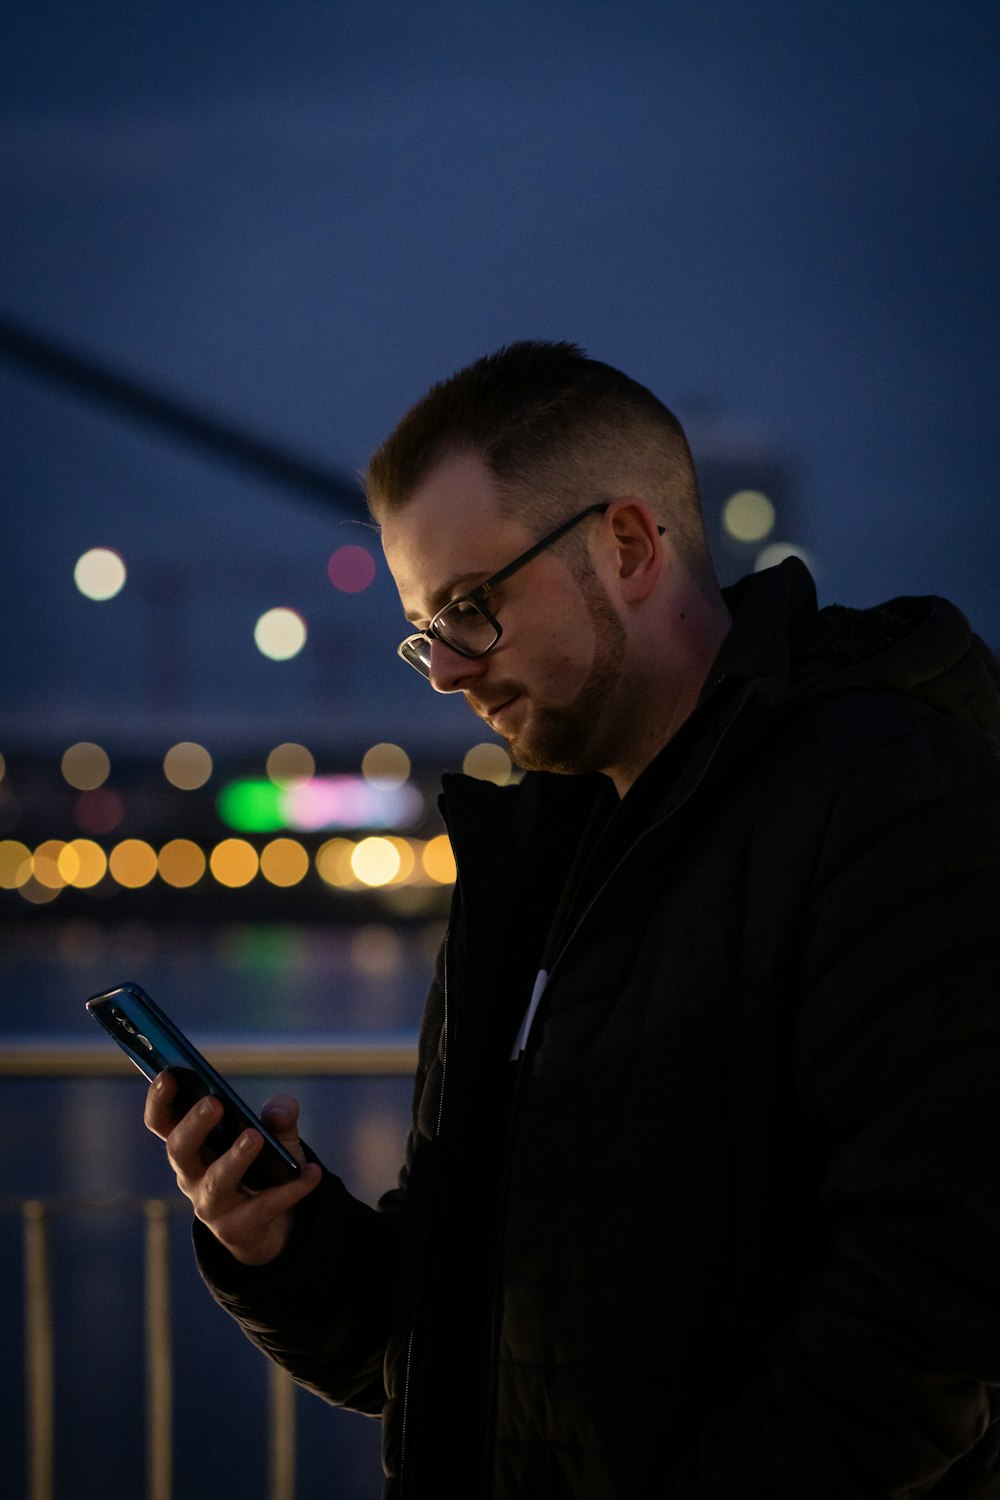 a man looking at his cell phone at night